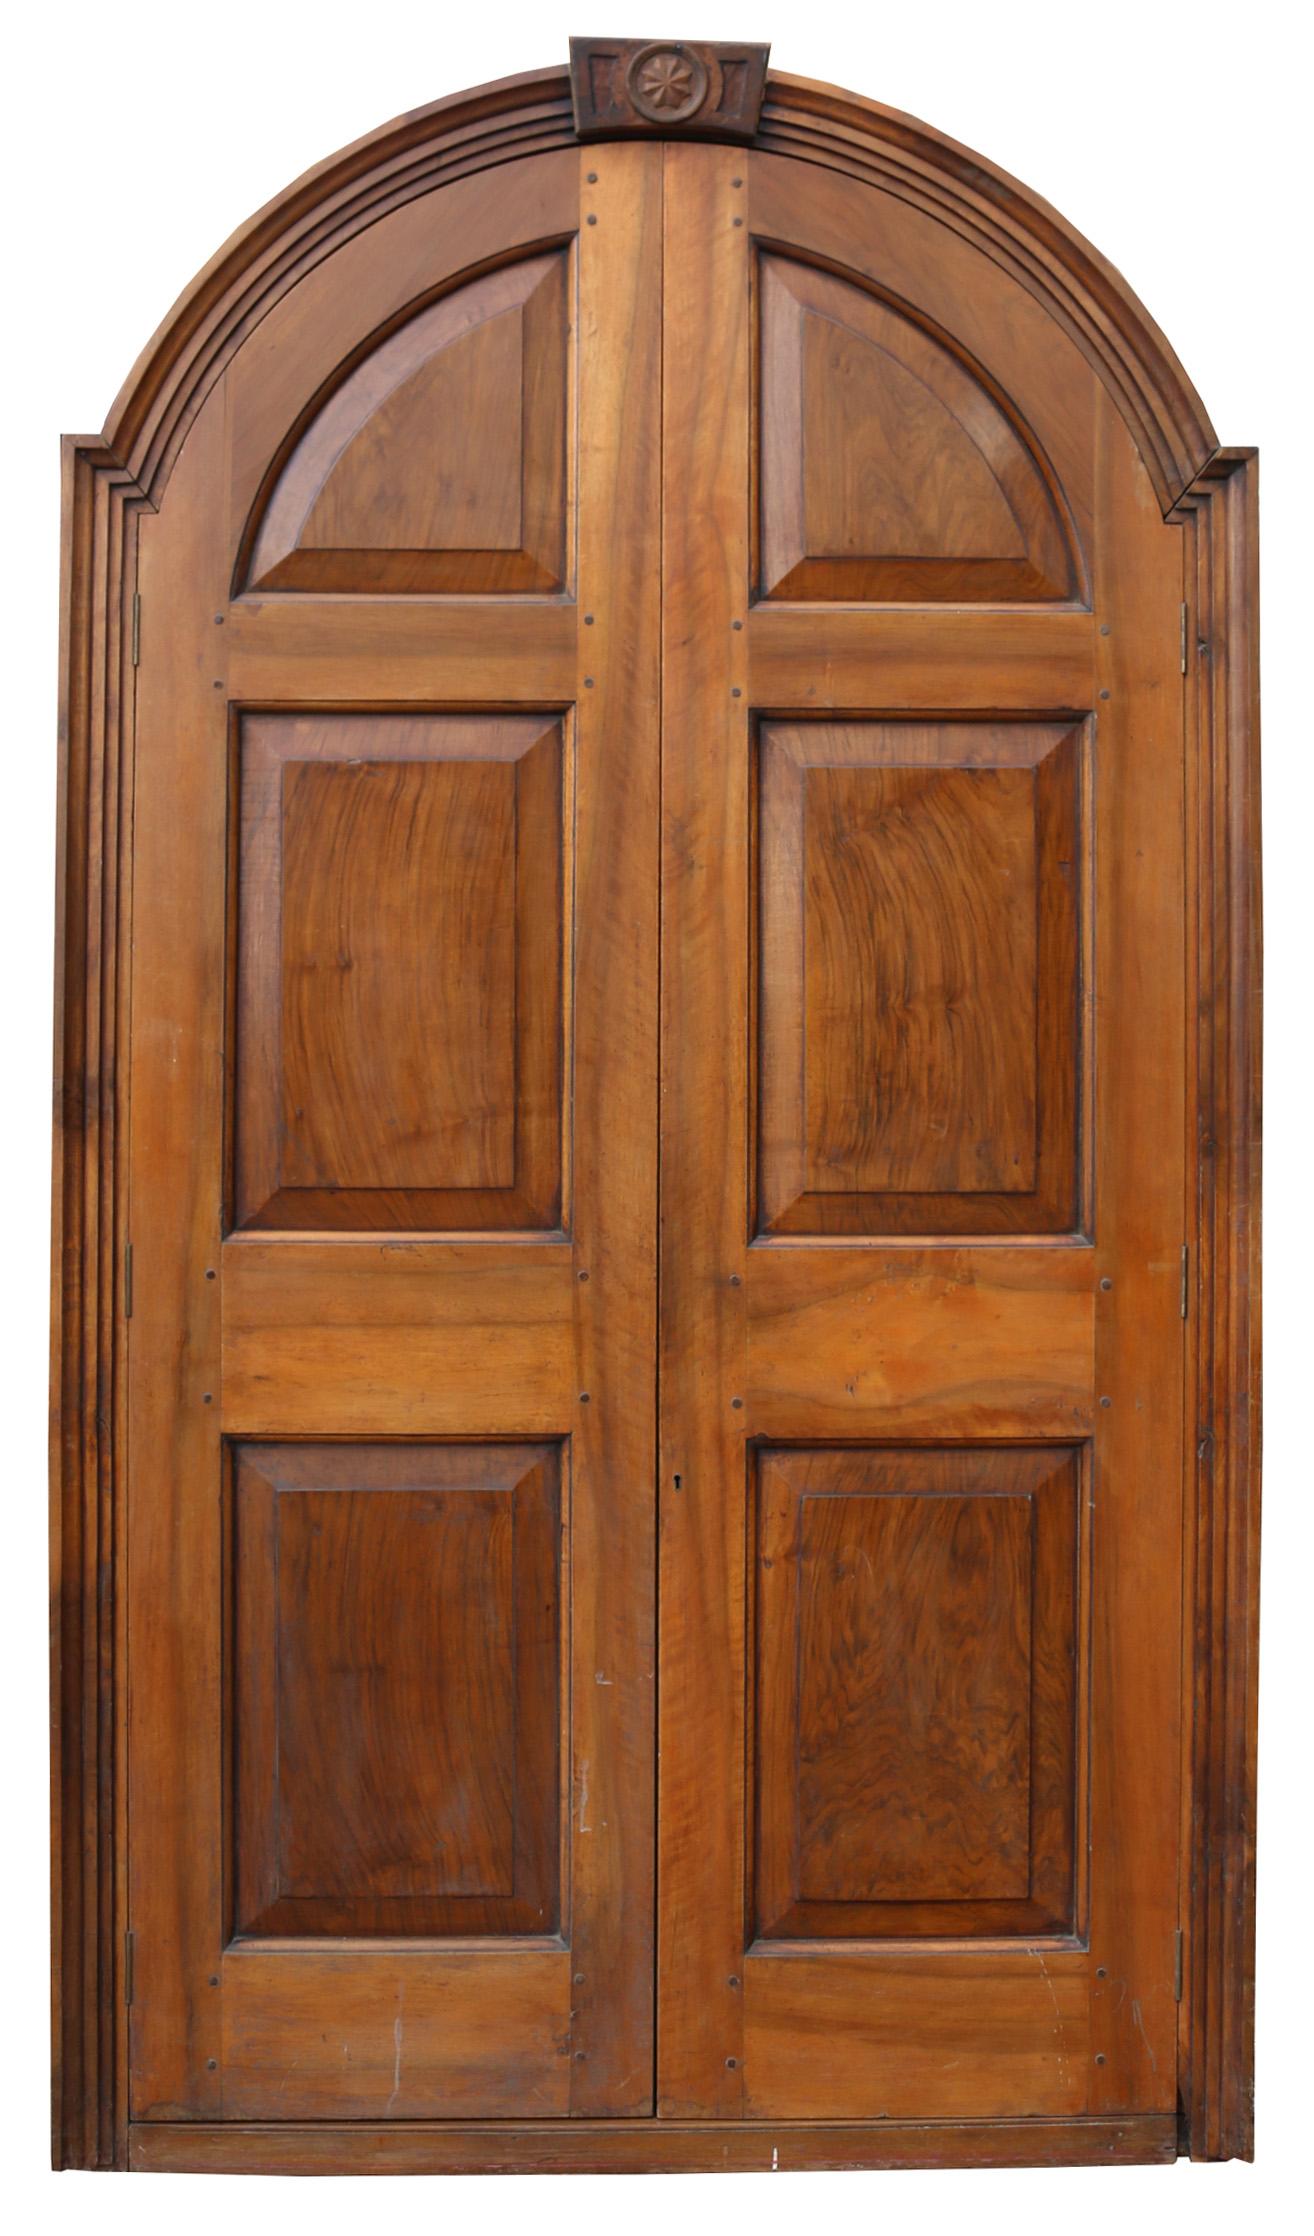 These doors are in excellent condition.
Height 233 cm (0verall) 216 cm (door)

Width 130 cm (overall) 114 cm (door)

Depth 8.5 cm (overall) 3.2 cm (door)

Weight 60 kg